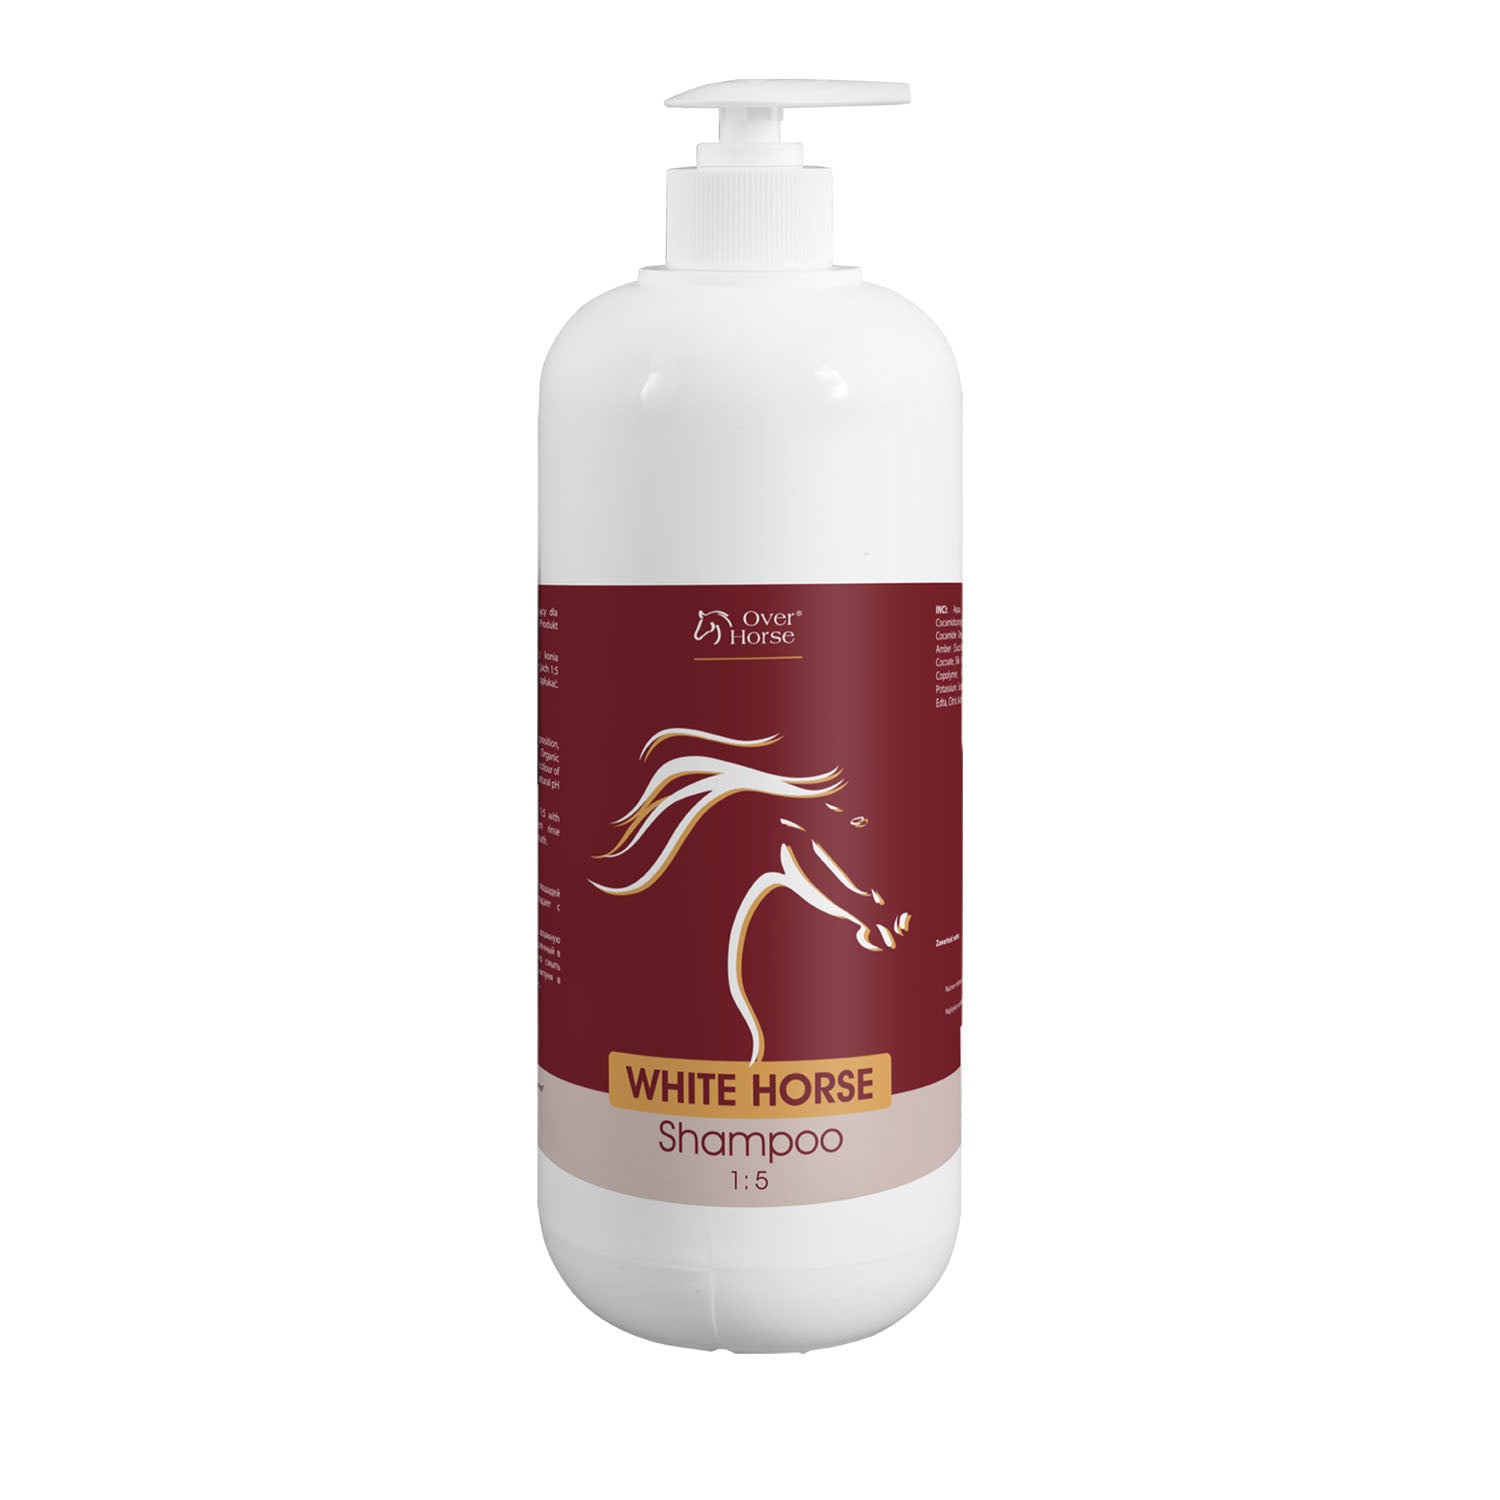 Over Horse White Horse Shampoo 1L